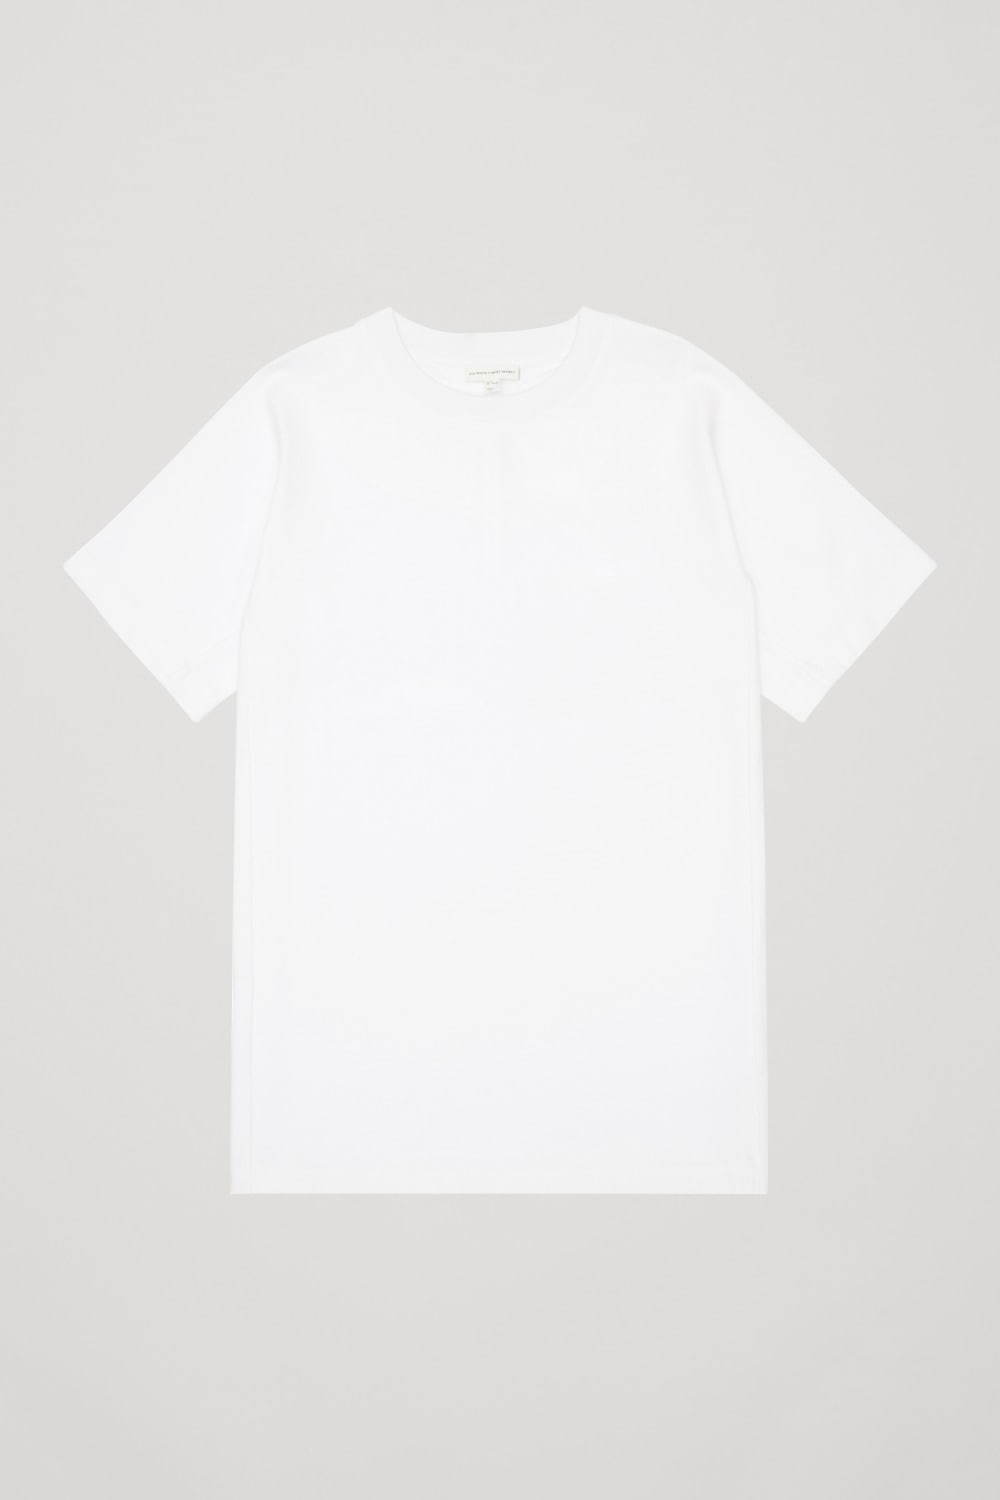 ルーズフィット オーガニックコットン Tシャツ 5,500円(税込)